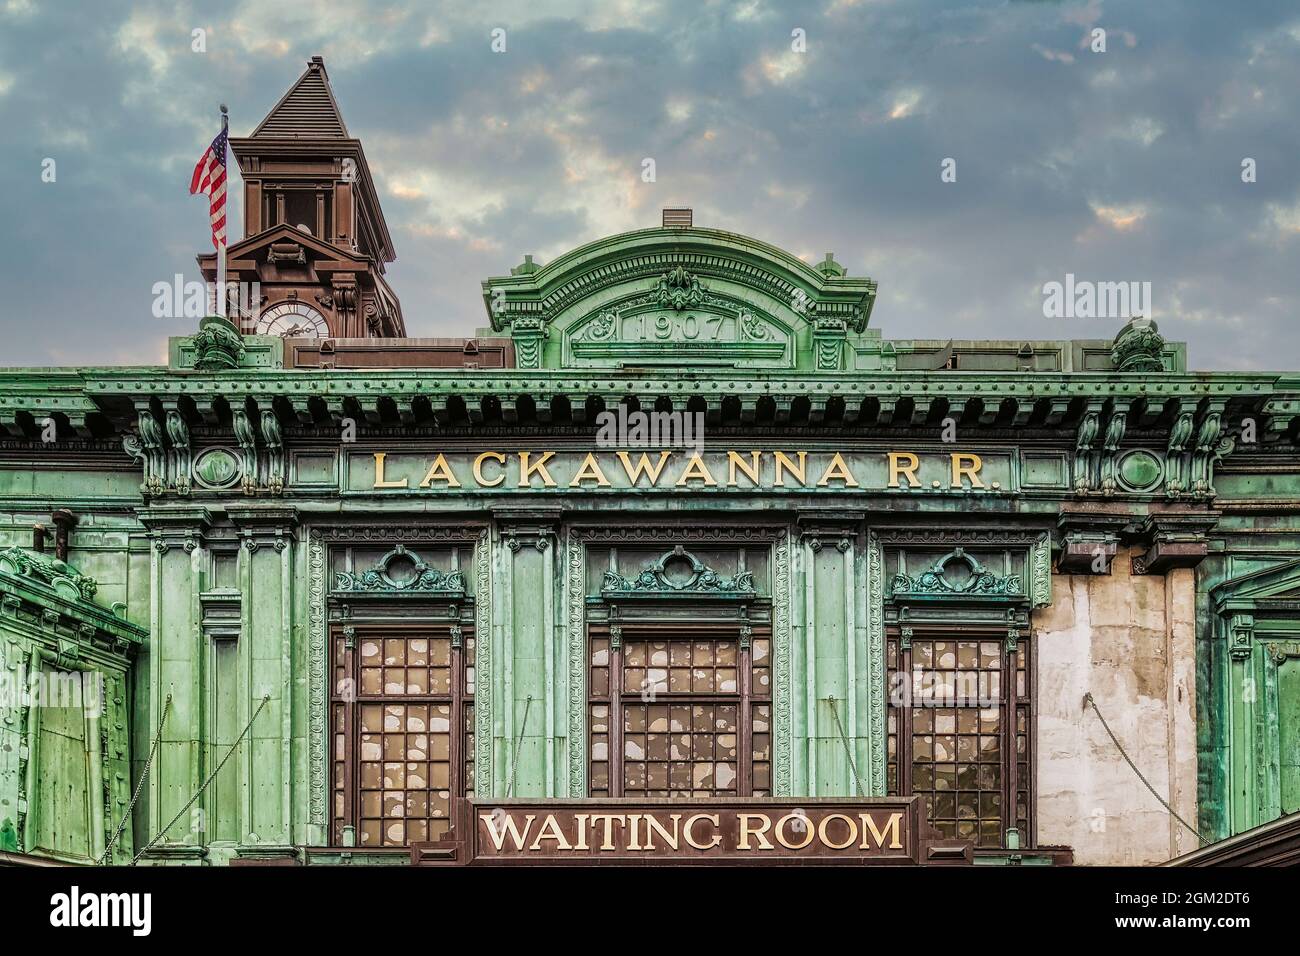 Lackawanna RR Warteraum - Erie Lackawanna Train Station Clock Tower in Hoboken, New Jersey. Dieses Bild ist sowohl in Farbe als auch in Schwarz und erhältlich Stockfoto